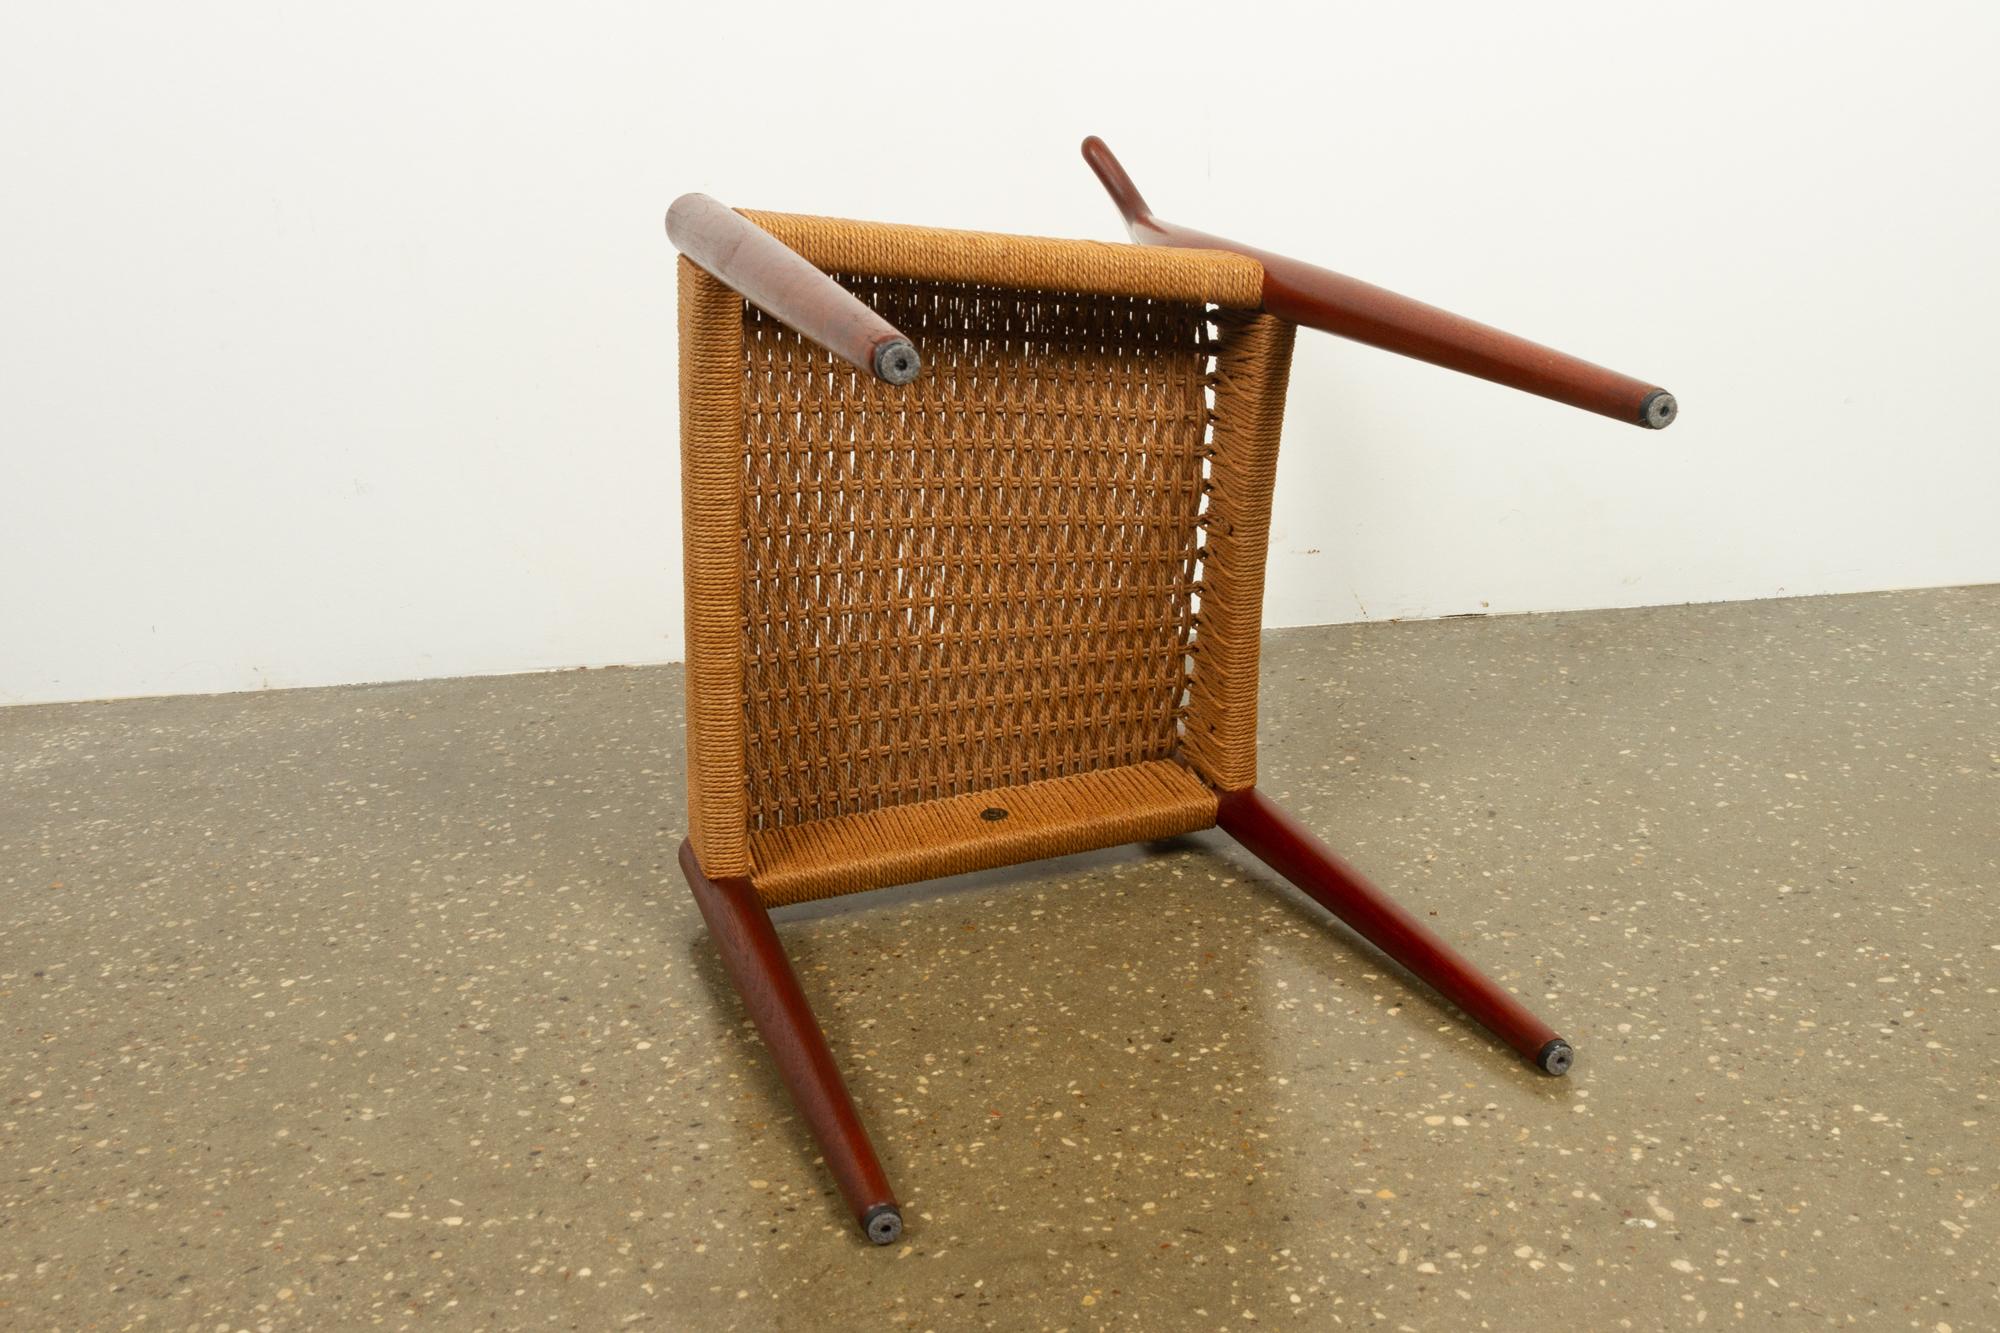 Vintage Danish Teak Chair by Arne Hovmand-Olsen for Mogens Kold, 1950s 5